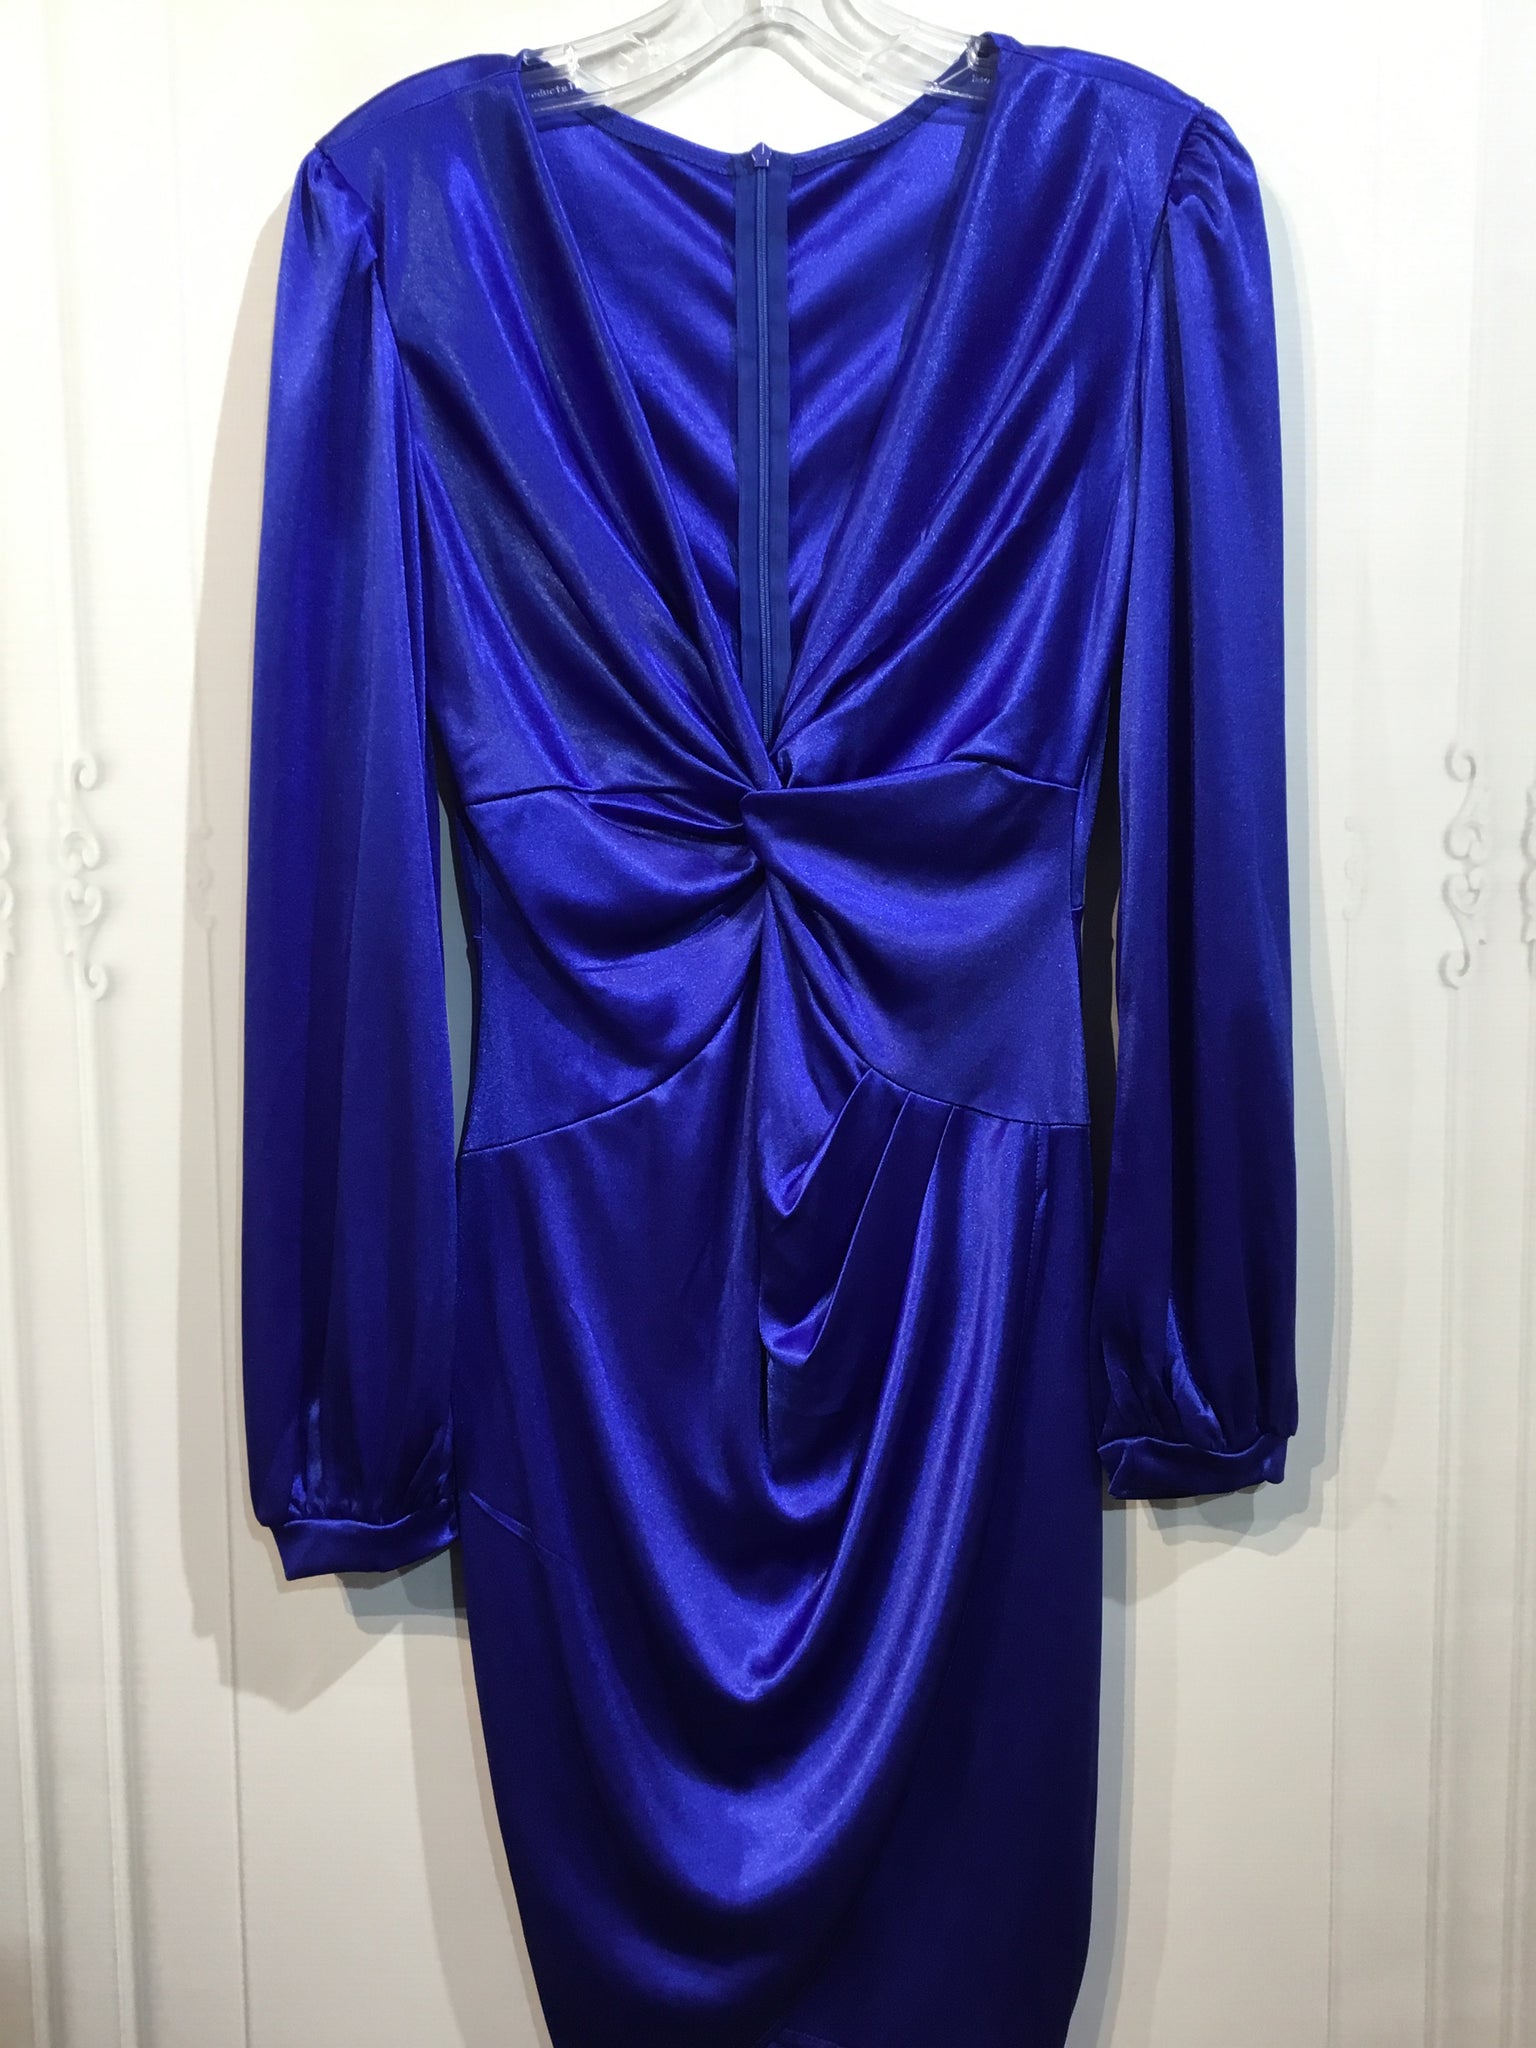 No Label Size S/4-6 Blue Dress